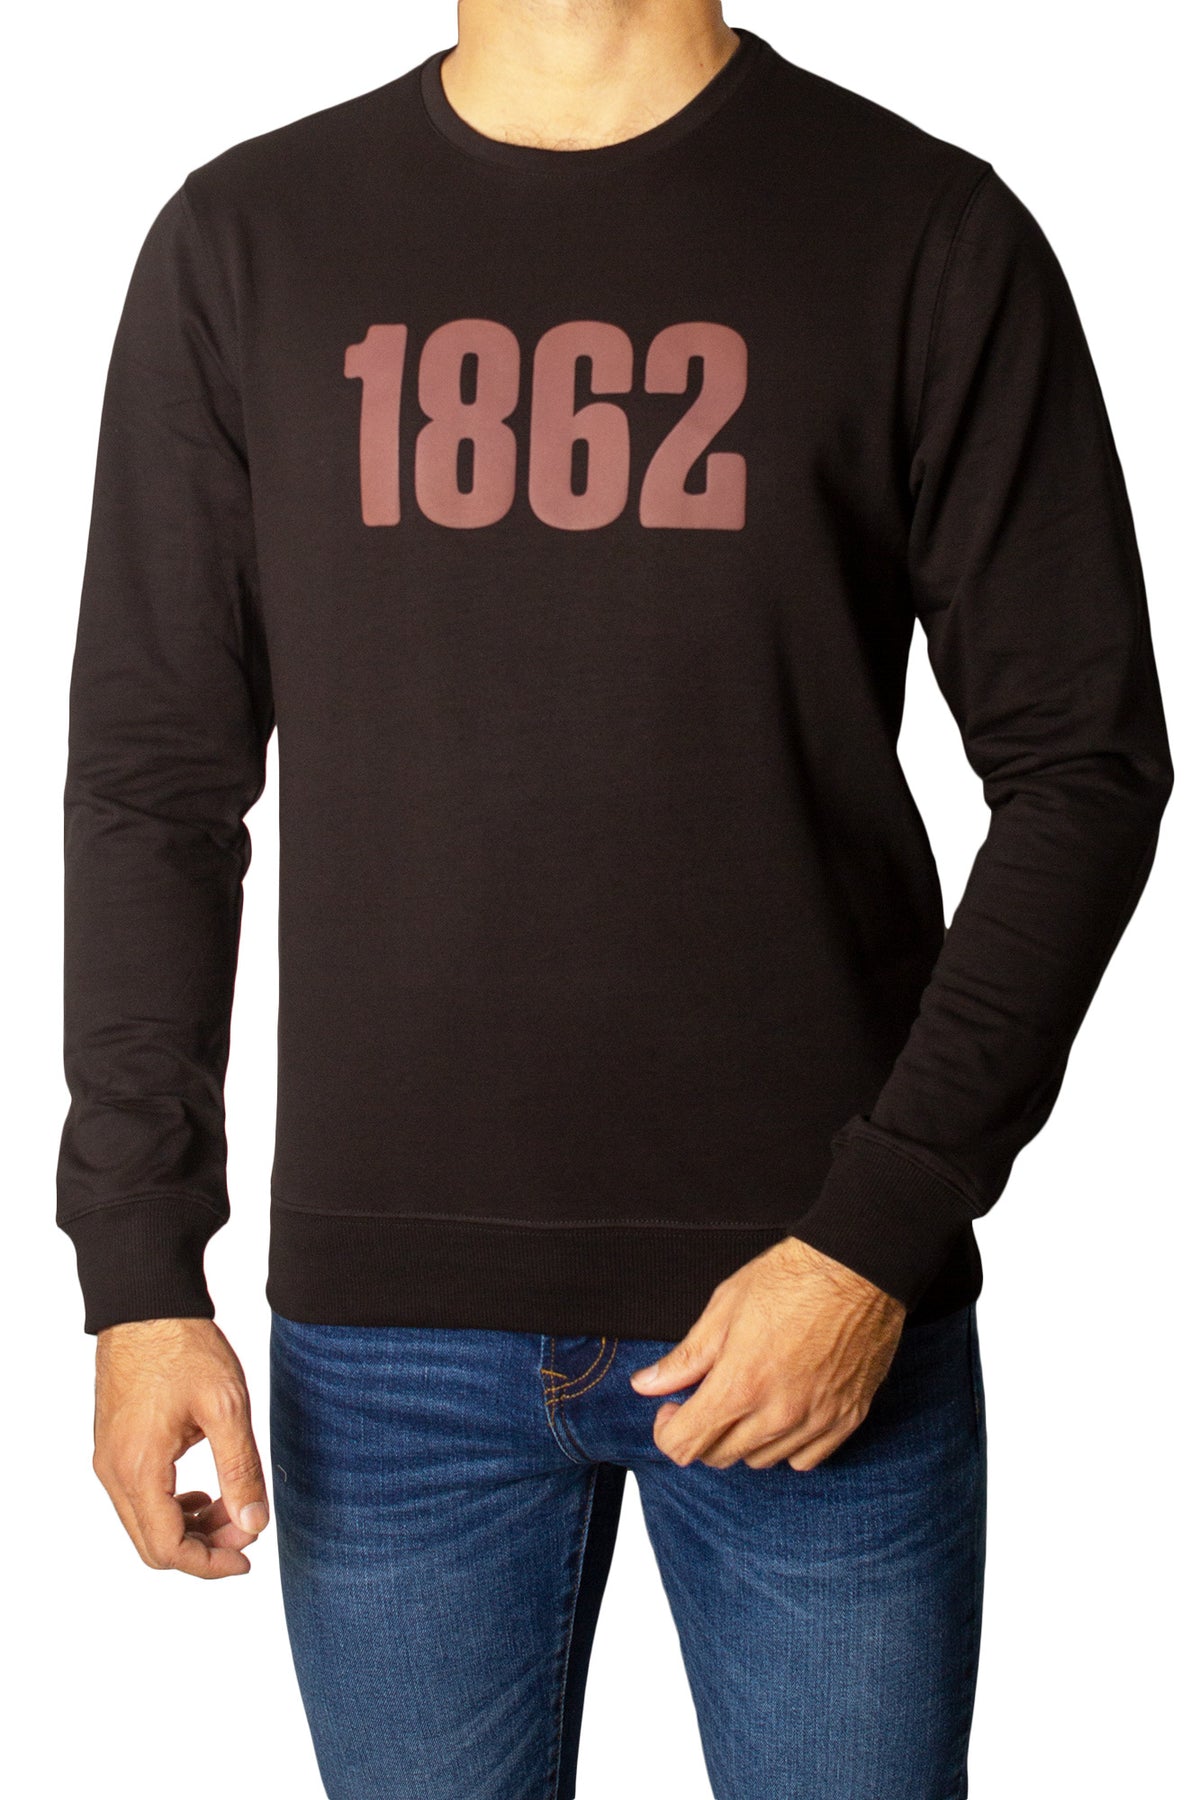 1862 Printed Full Sleeves T-Shirt Tsh-6833 Black